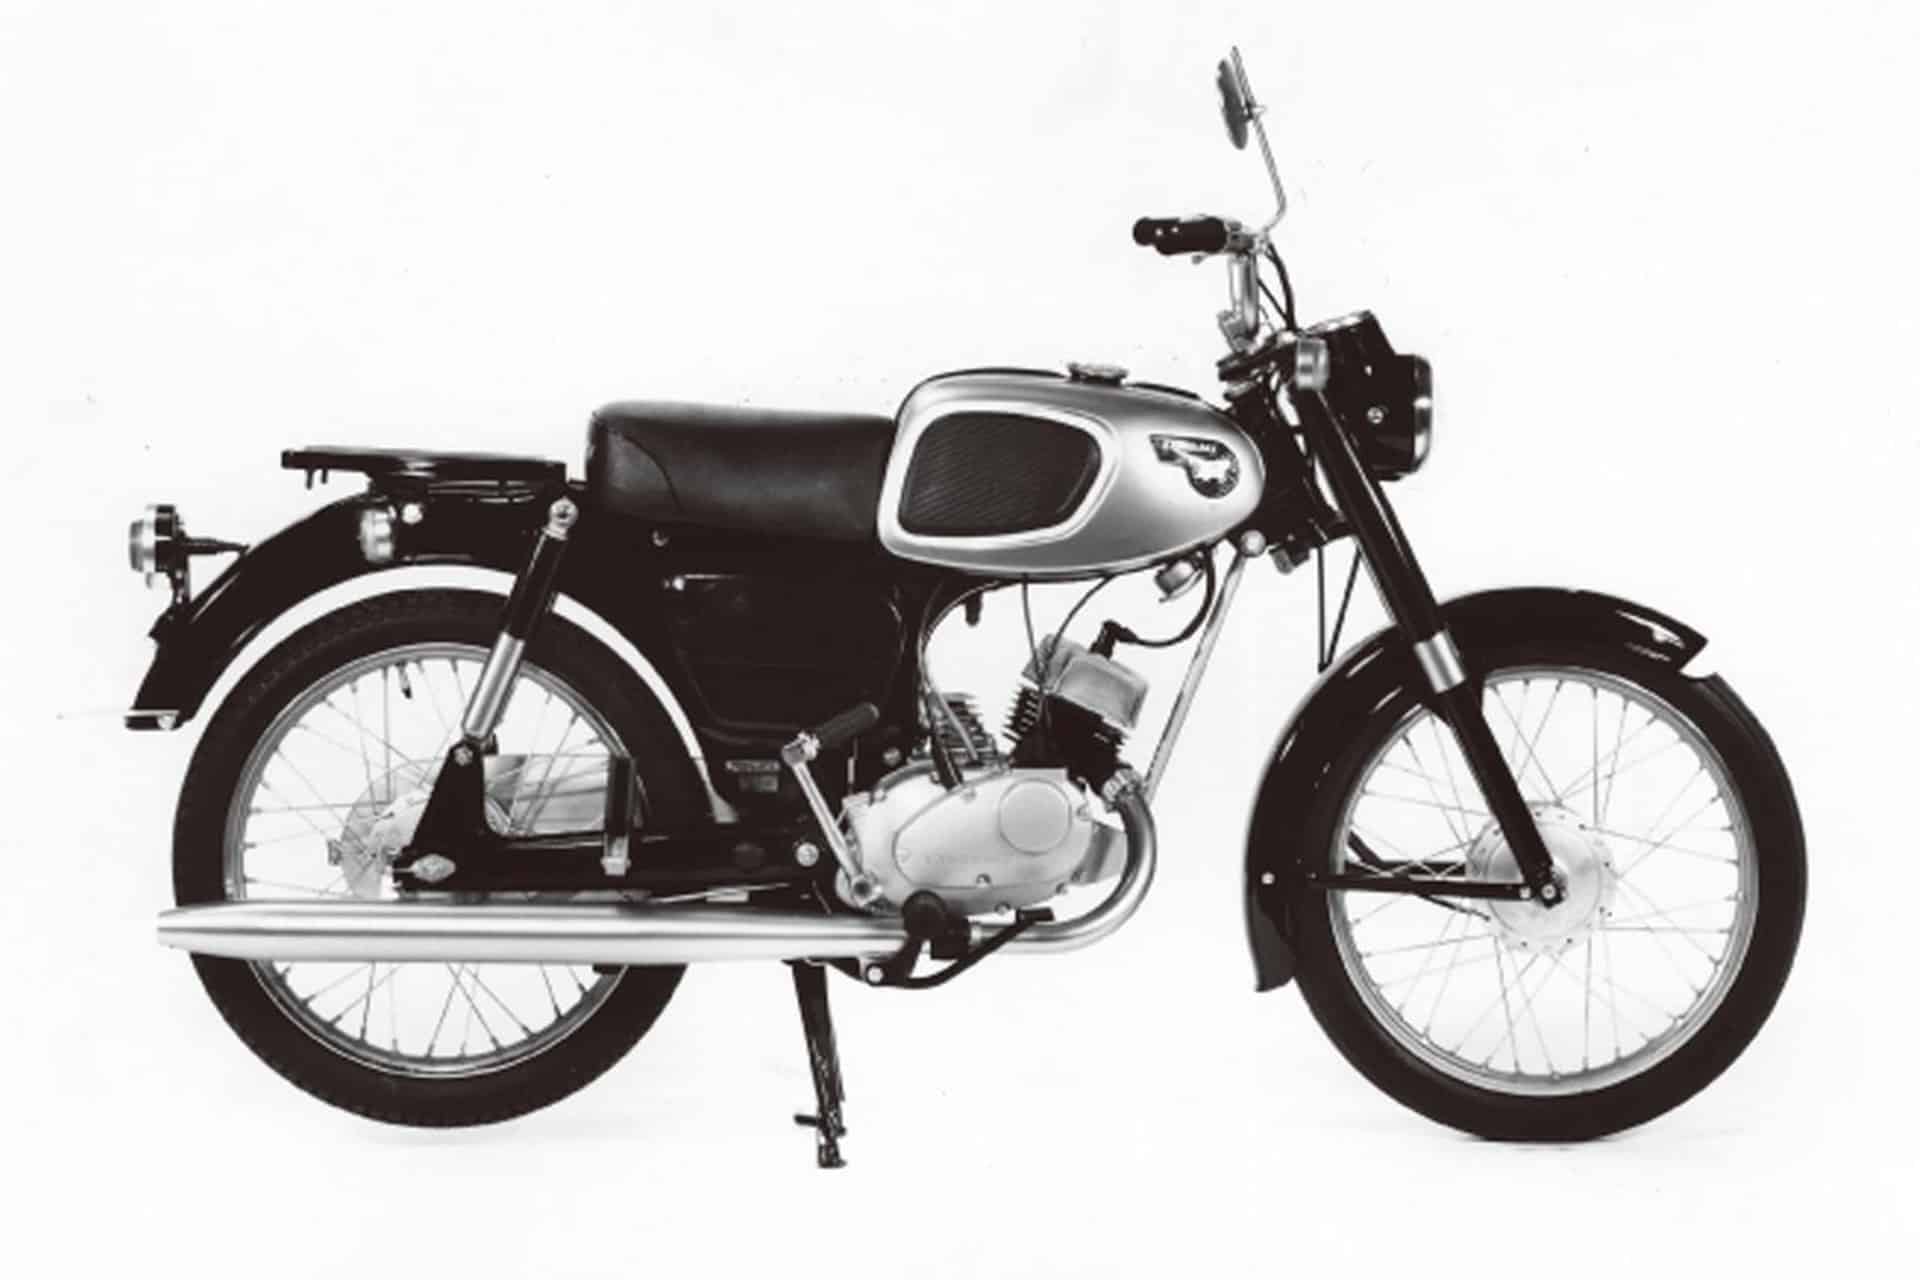 Exposición Kawasaki 70th: "70 años de buenos tiempos"